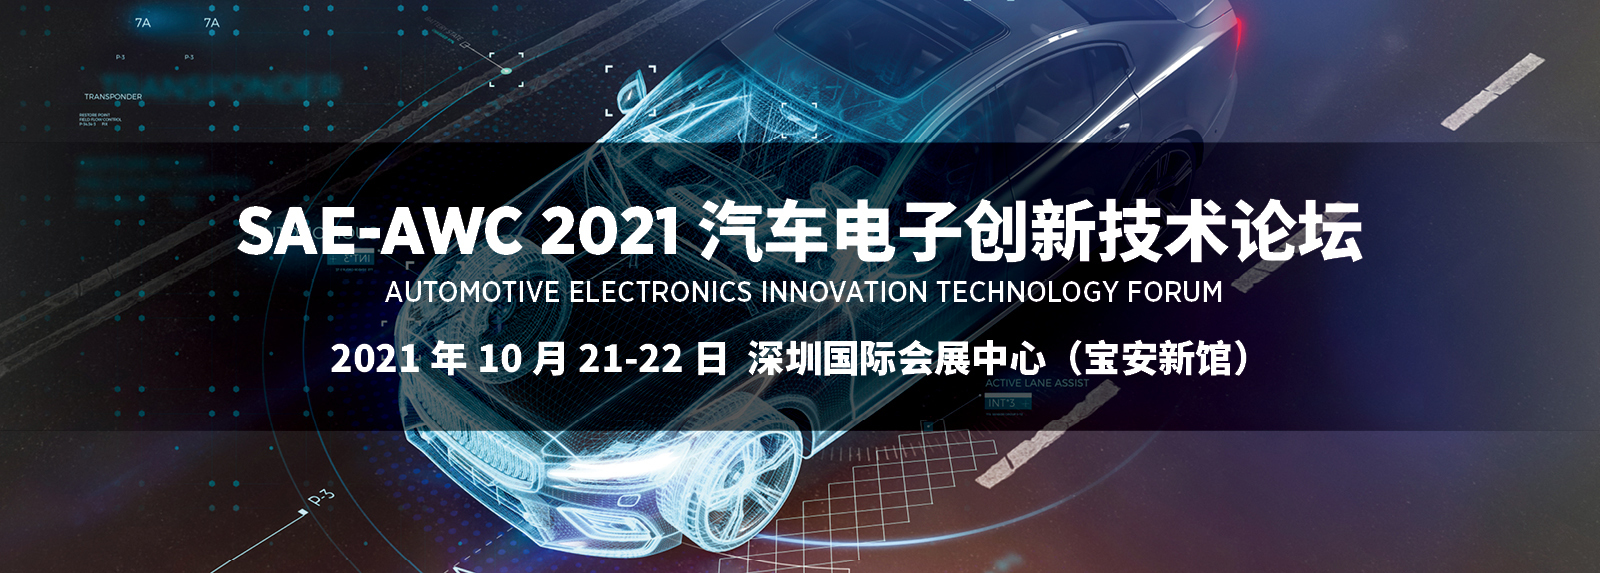 SAE-AWC 2021 汽车电子创新技术论坛